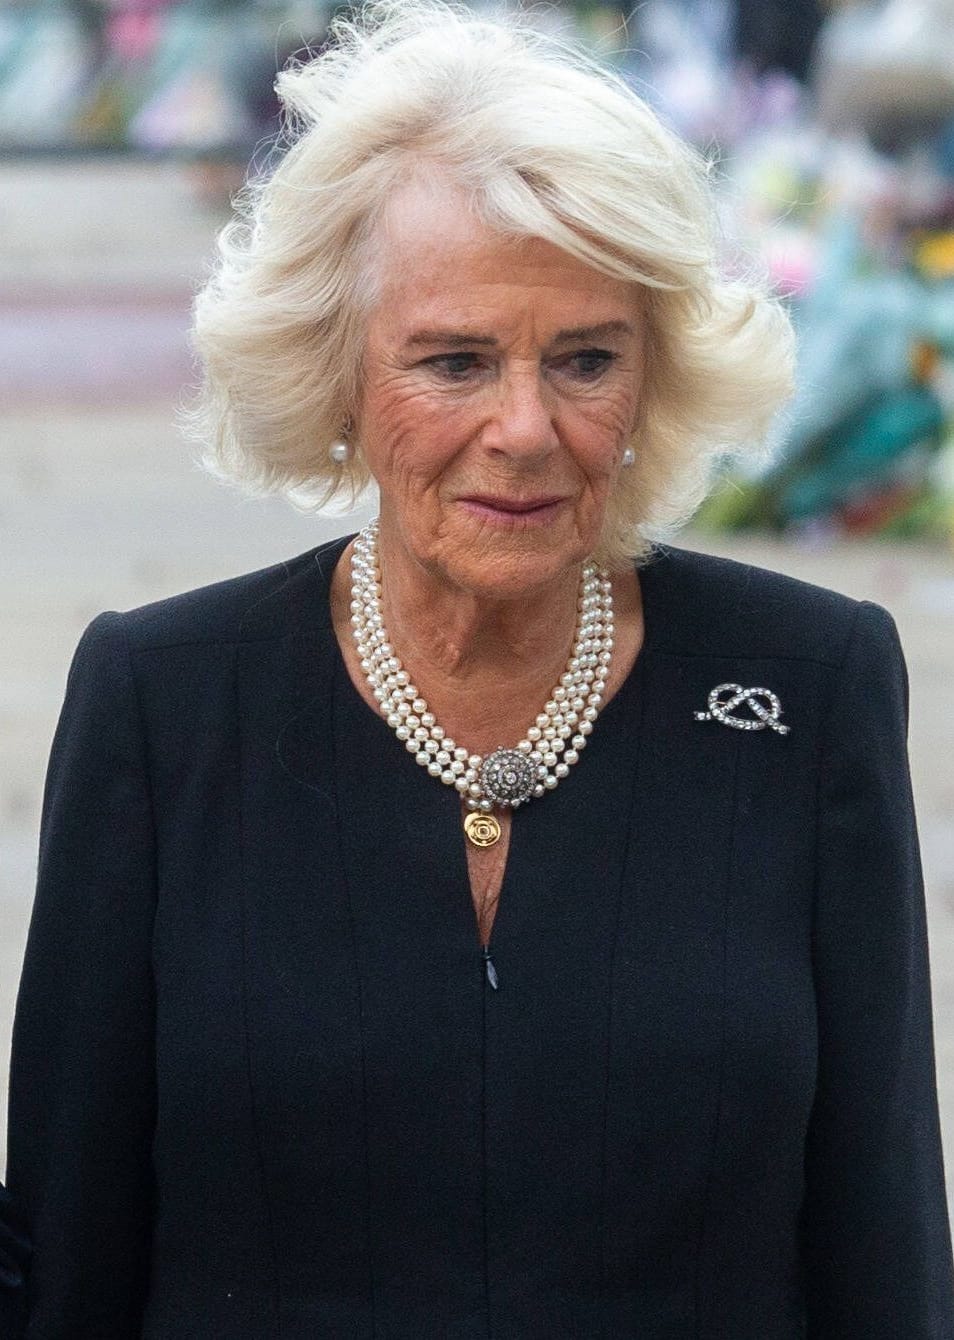 Königsgemahlin Camilla setzte auf Perlenschmuck.